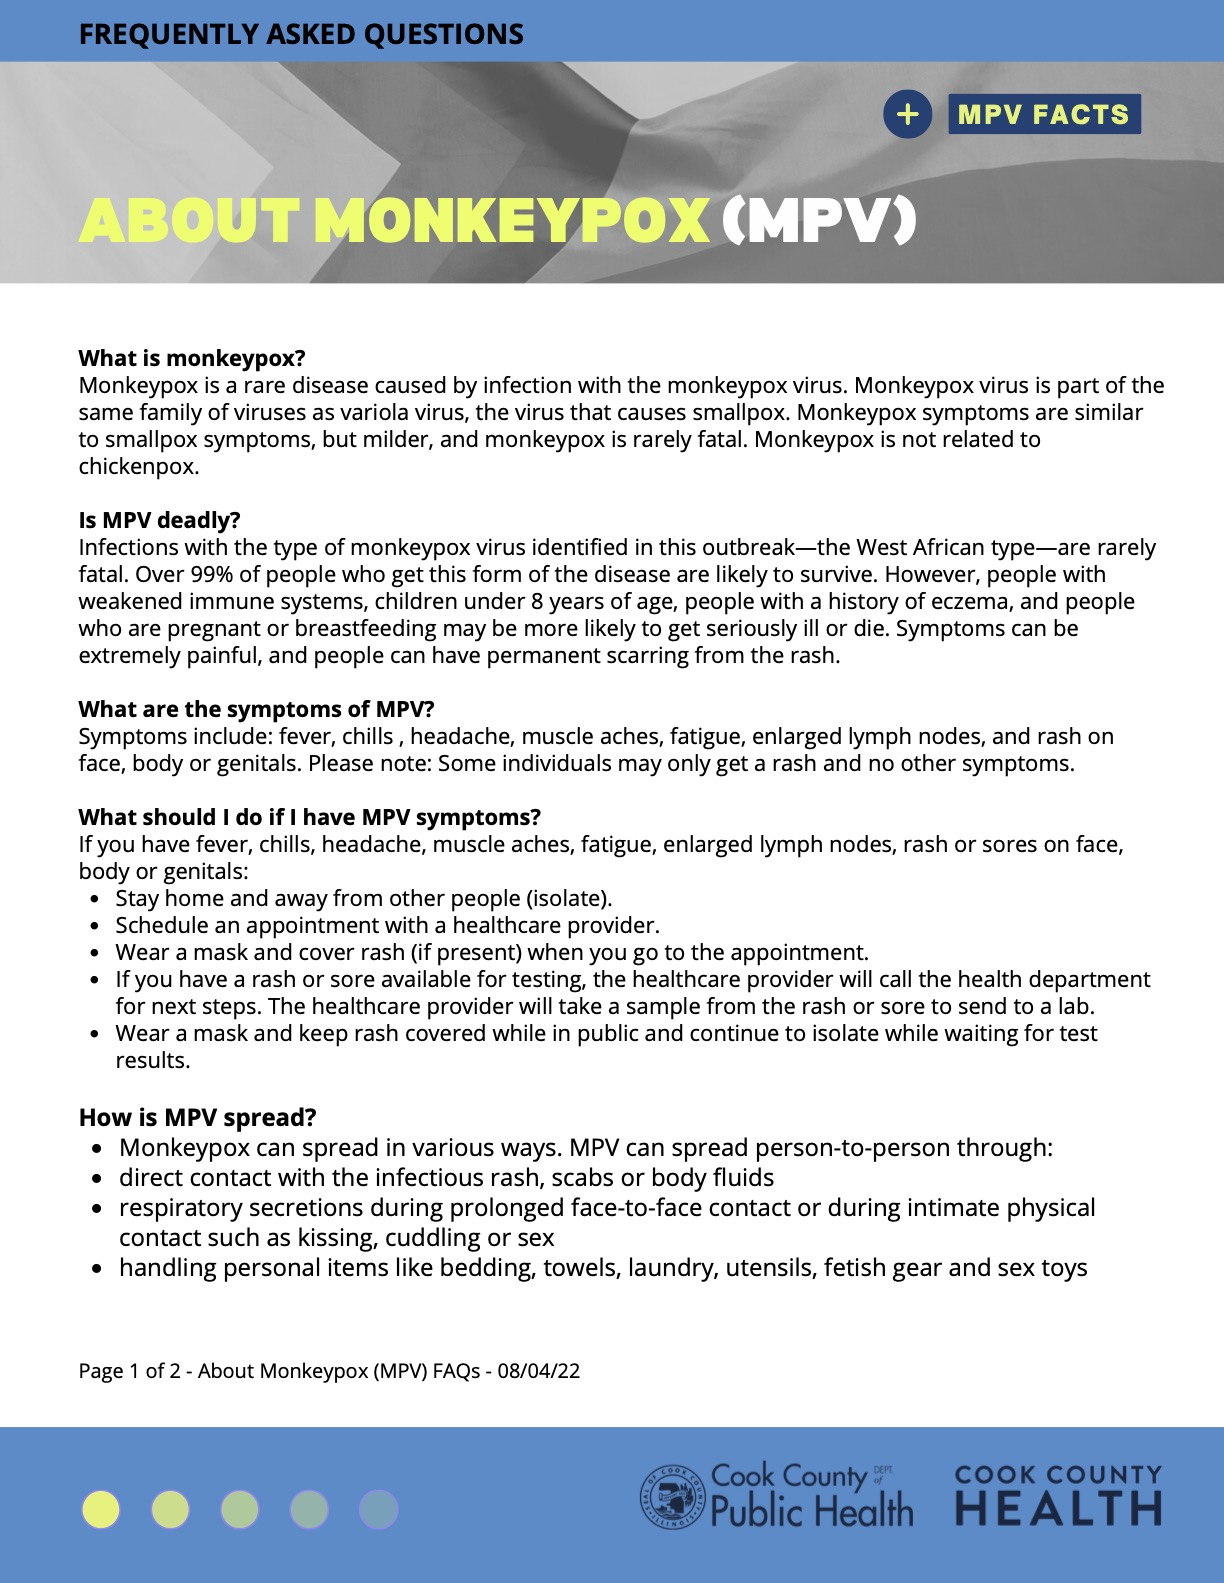 About Monkeypox (MPV) FAQs